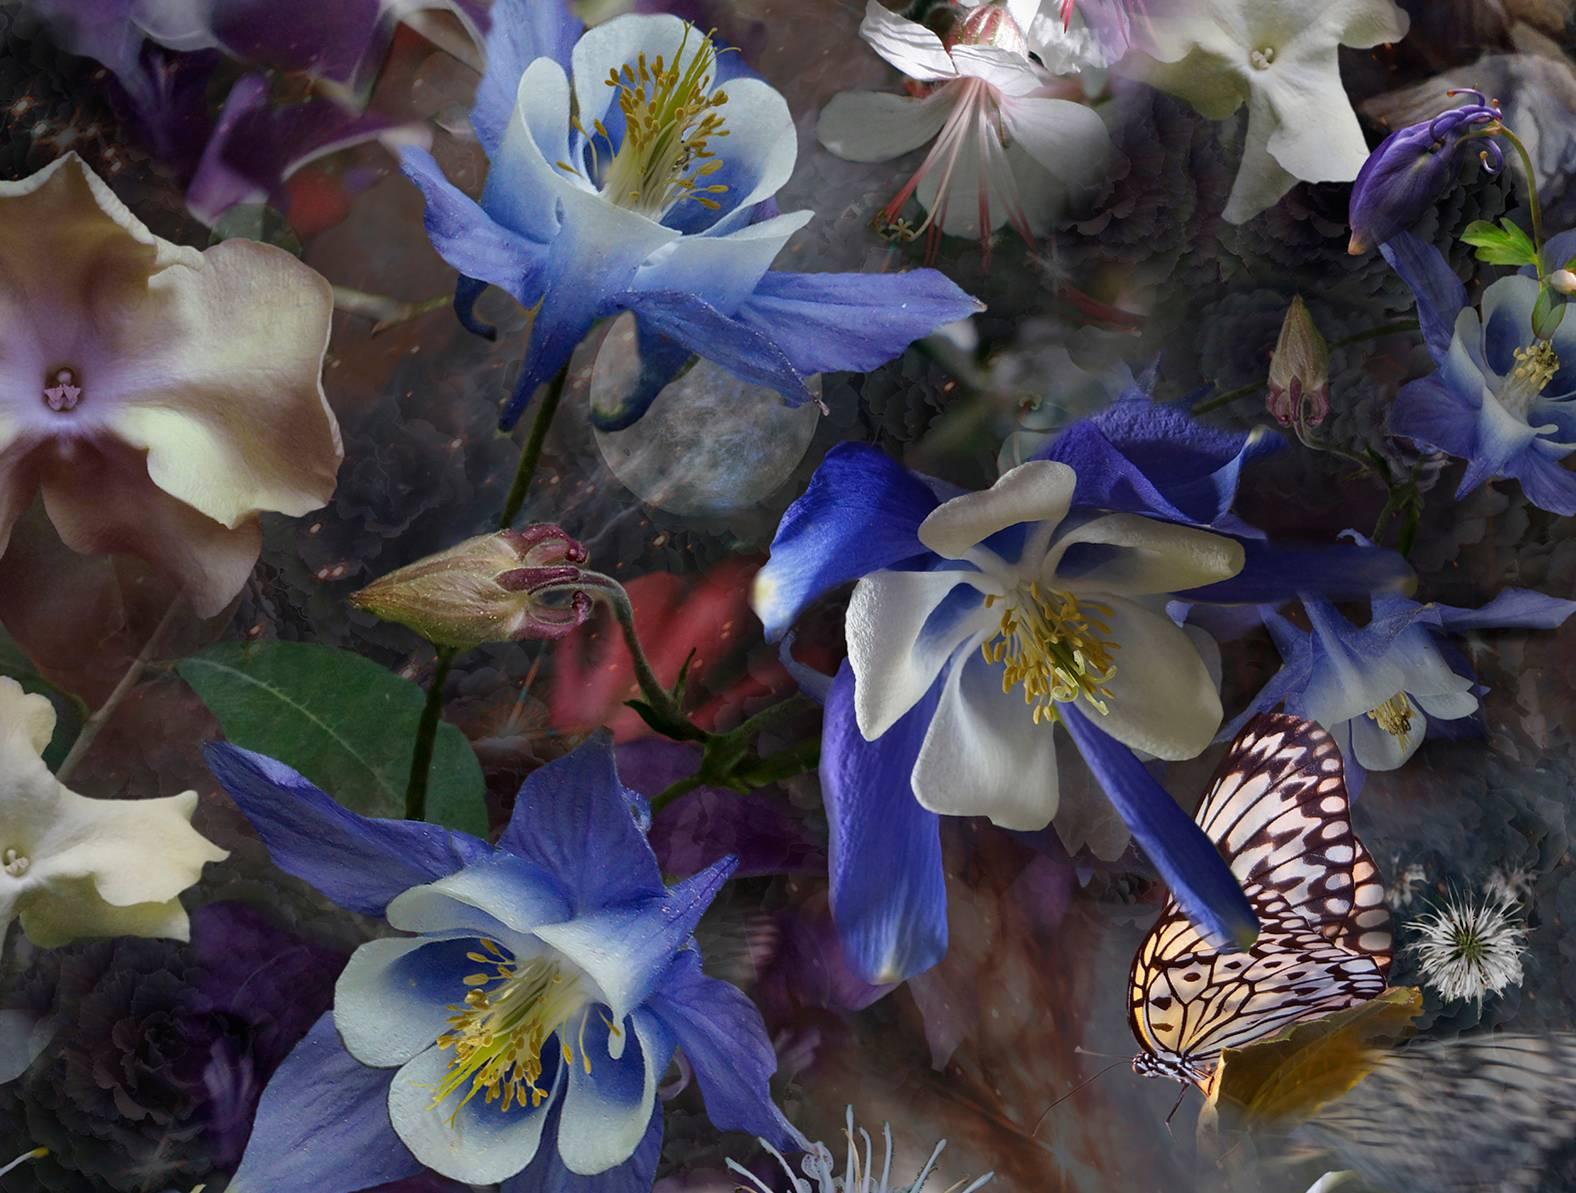 Diese botanische Fotografie zeigt Blumen, Schmetterlinge und Tauben in einer abstrakten Komposition. Violett- und Blautöne heben sich leuchtend von dem abgedunkelten Hintergrund ab, und unscharfe Bilder von Schmetterlingen suggerieren Bewegung im